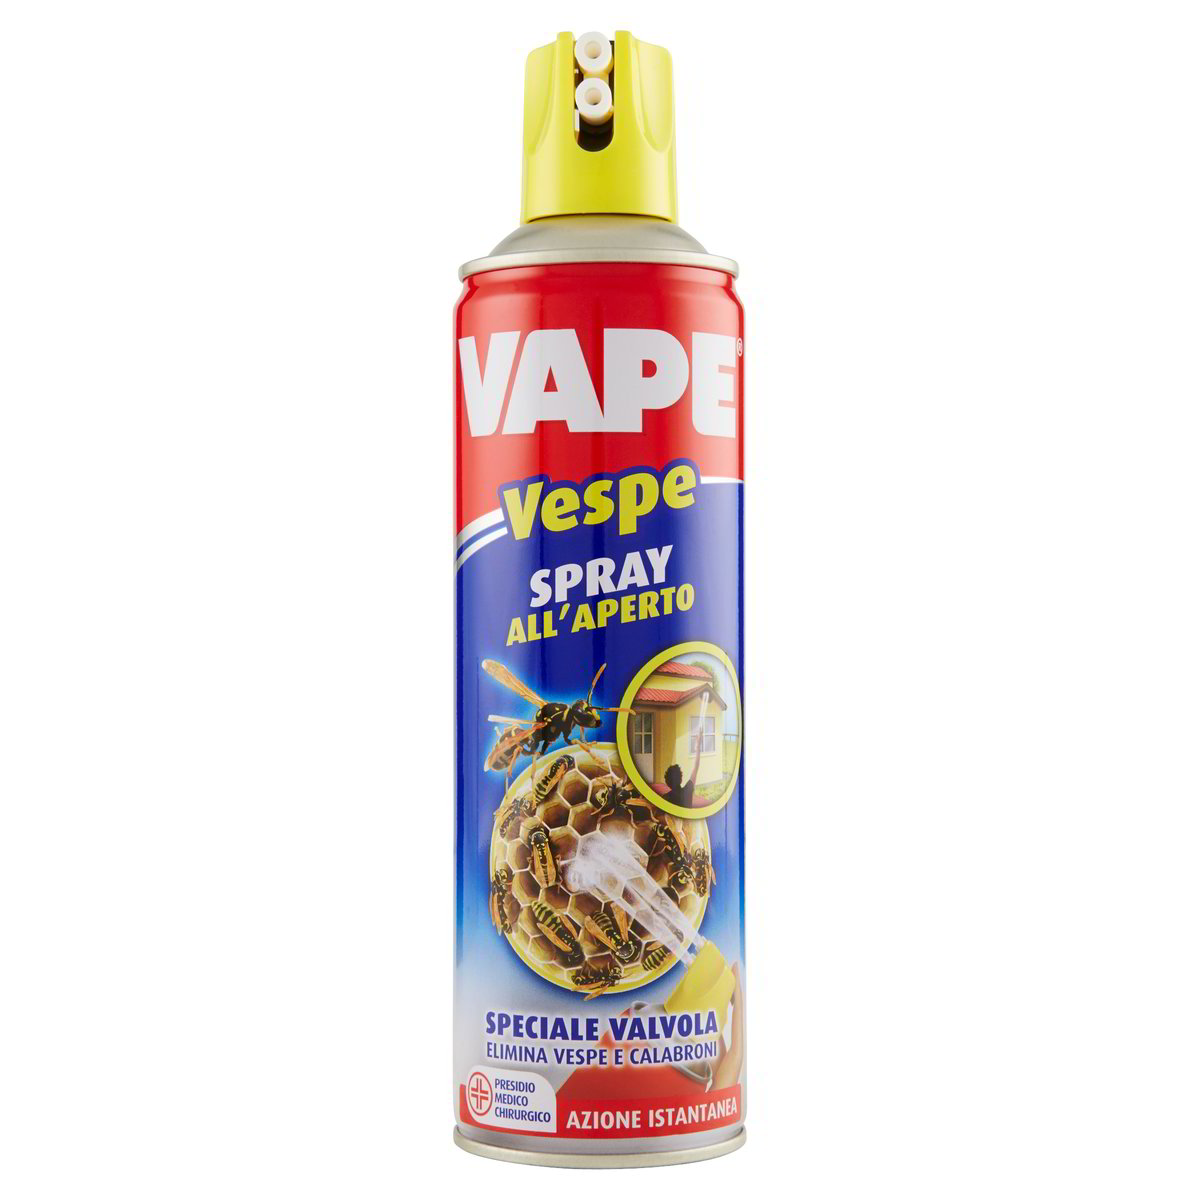 Vespe Spray All'aperto